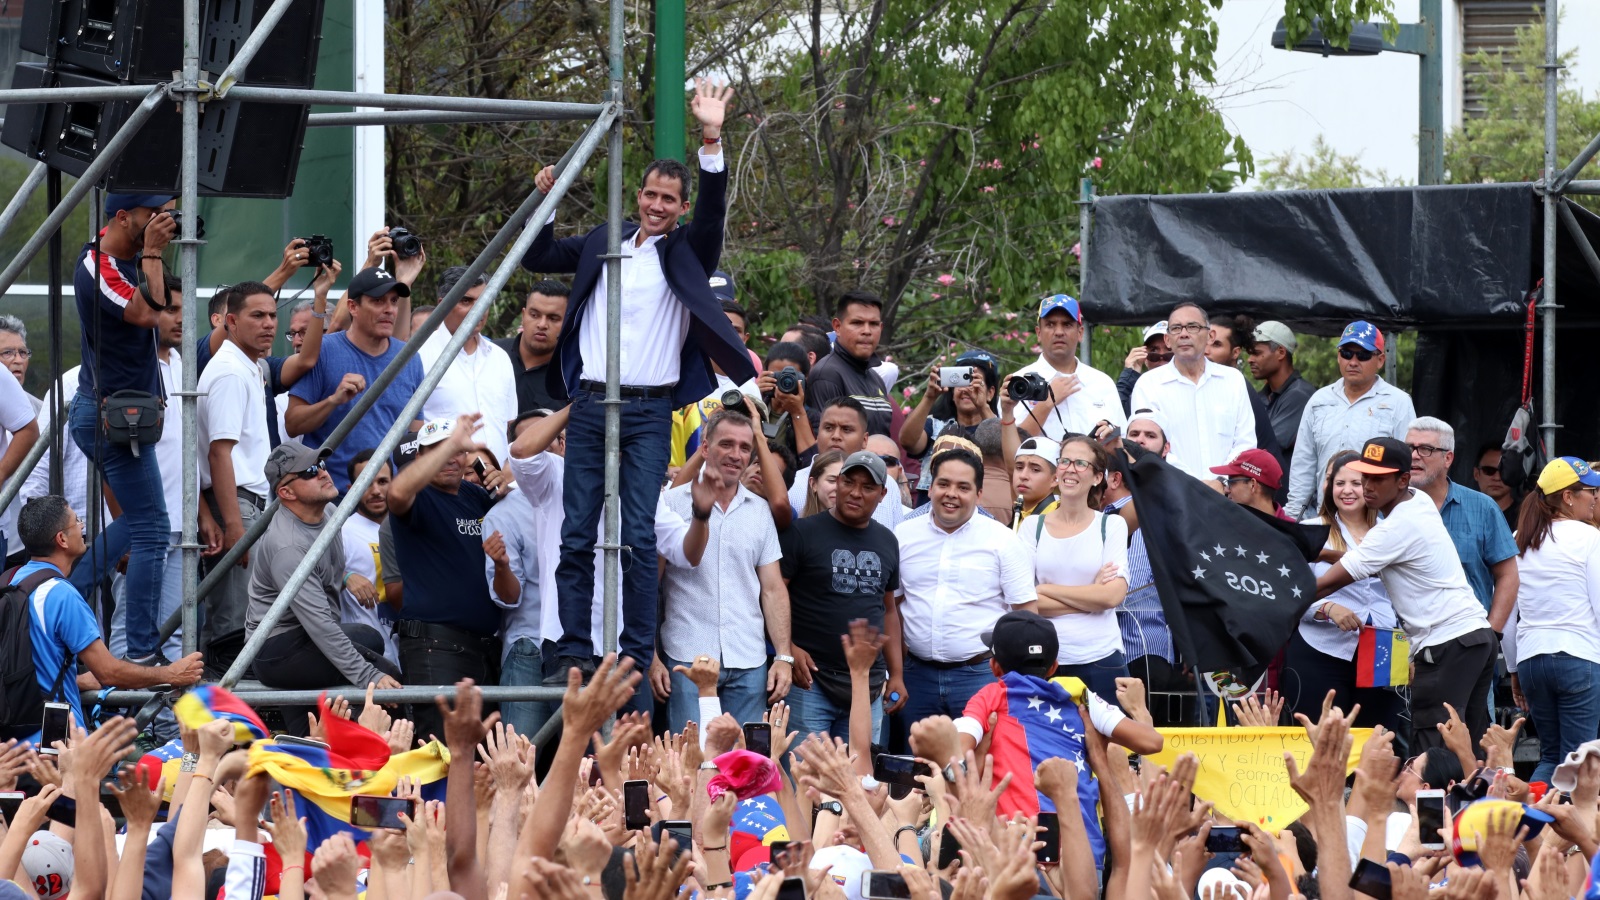 غوايدو قال إنه لا يستبعد تدخلا أجنبيا ببلاده لإسقاط نظام غريمه الرئيس مادورو (الأناضول)